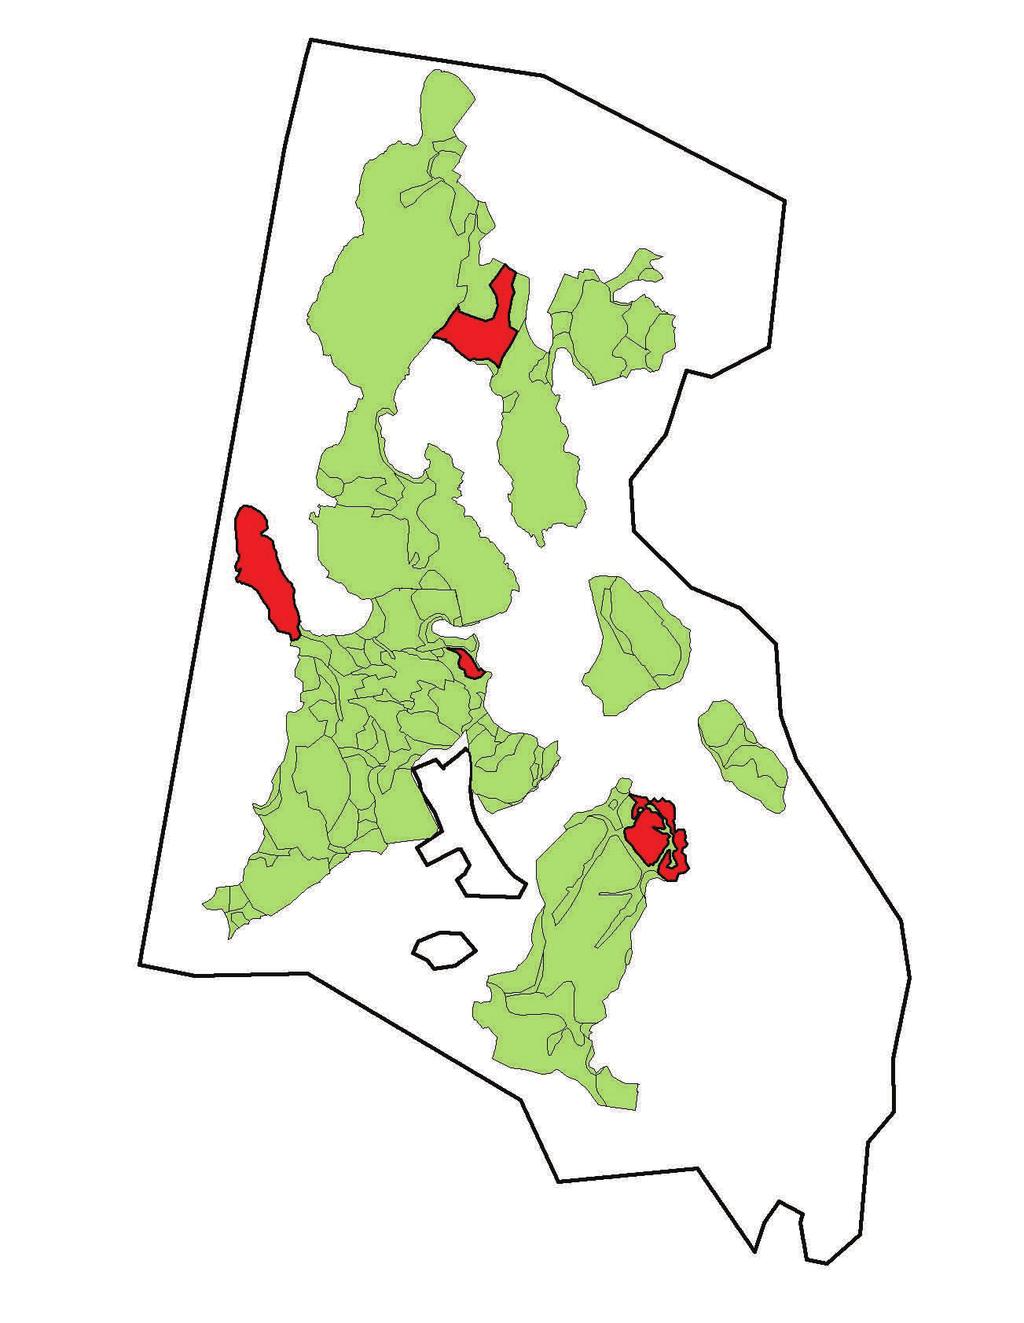 a b Figur. Exempel på geografisk uppföljningsstruktur för ett storområde (Trossö-Kalvö-Lindö). a) Uppföljningsytor av olika naturtyper (olika färger) i storområdet.